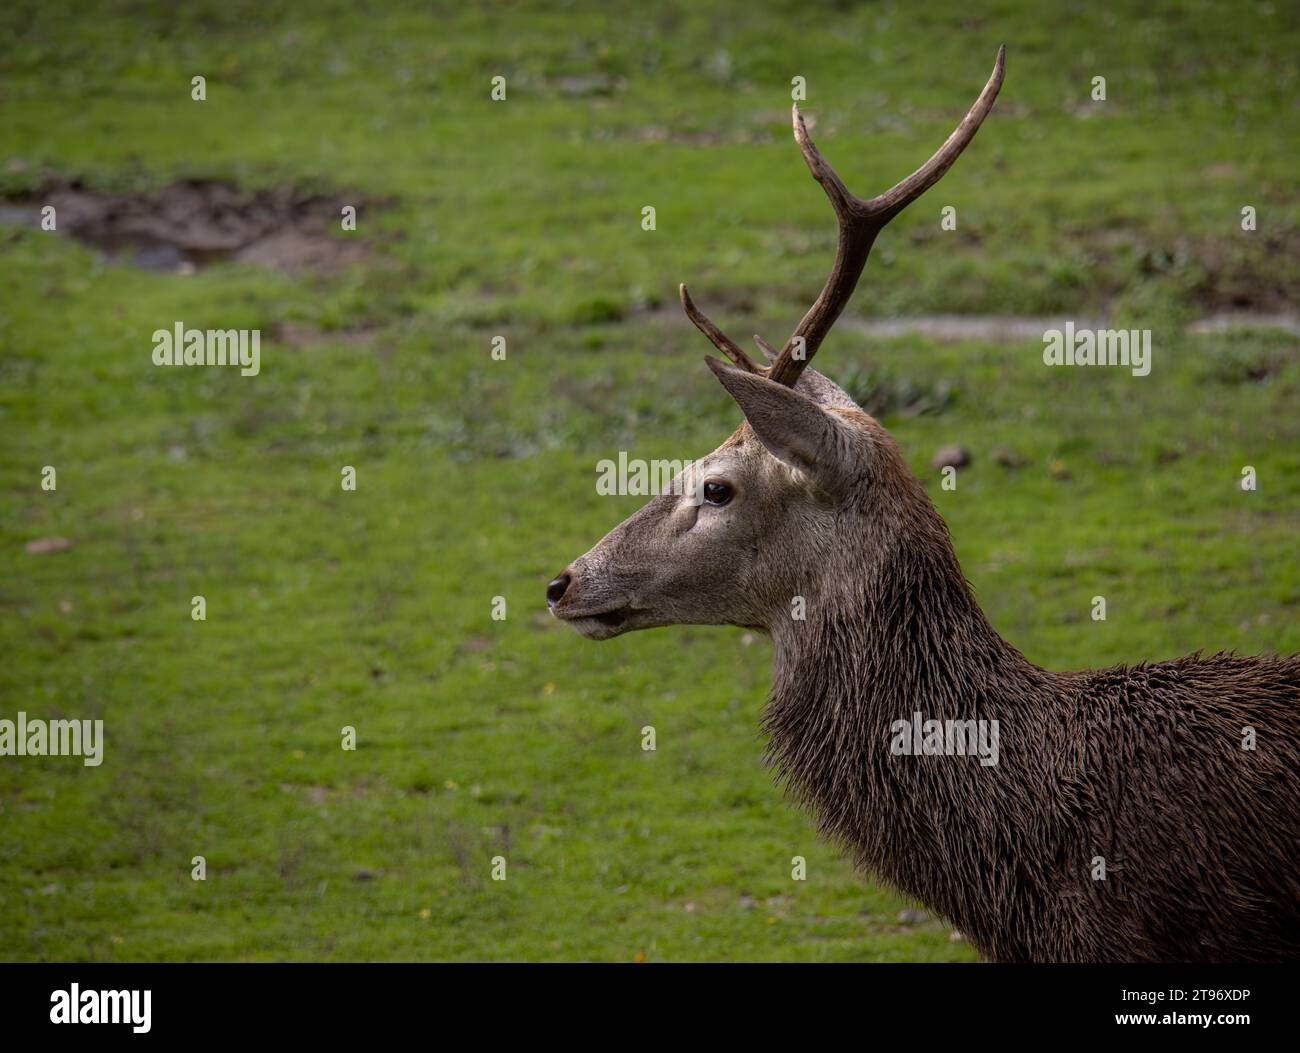 Retrato de un ciervo macho con una sola asta en el Parque Nacional de Monfragüe, Cáceres, España Stock Photo